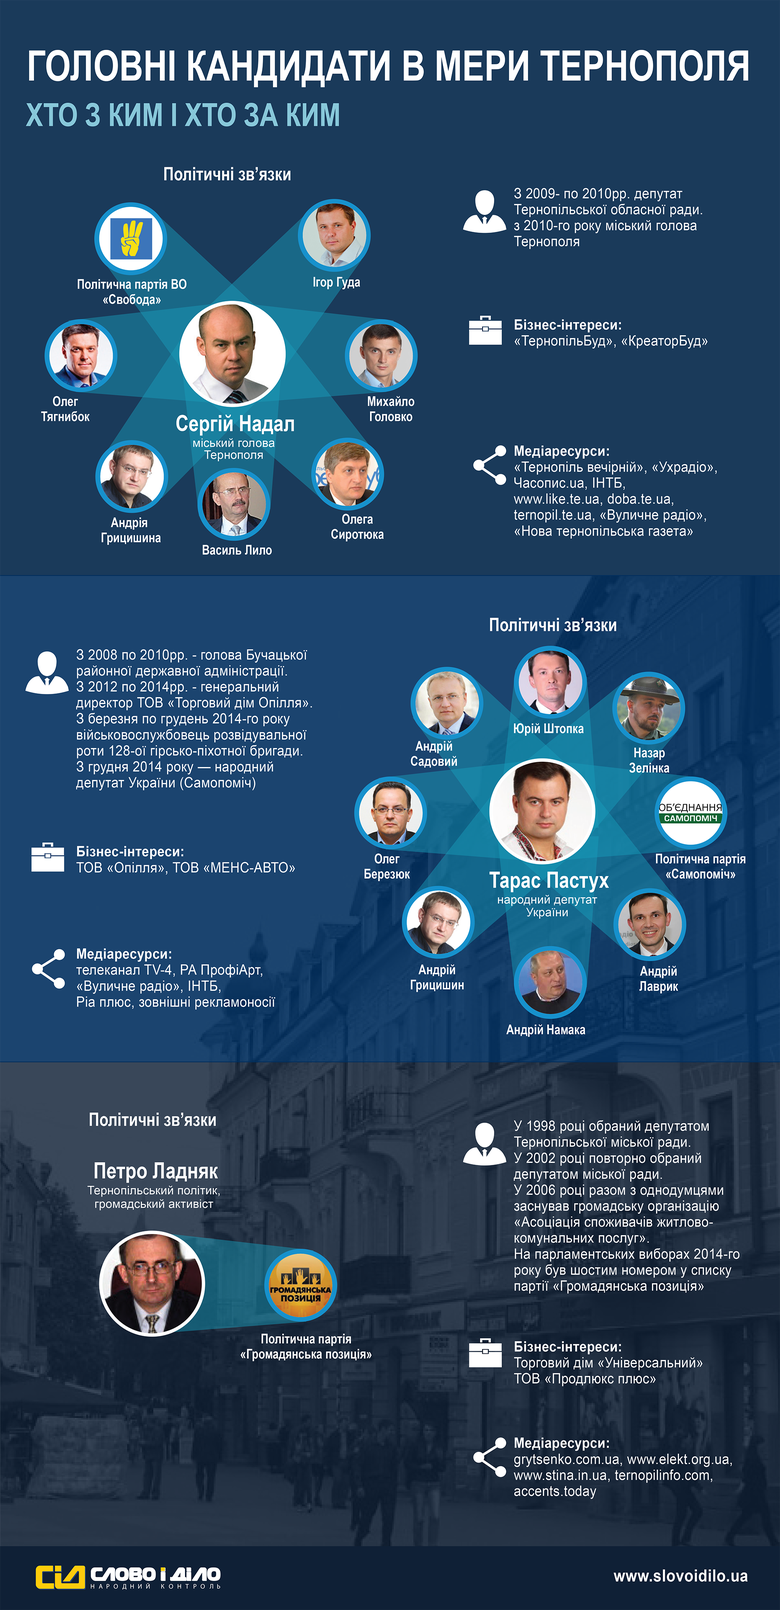 В рамках спецпроекта «ОБРАНІ» журналисты «Слова и Дела» выяснили, каким политическим, деловым, а также информационным ресурсом прямо или косвенно владеют потенциальные кандидаты в мэры Тернополя.